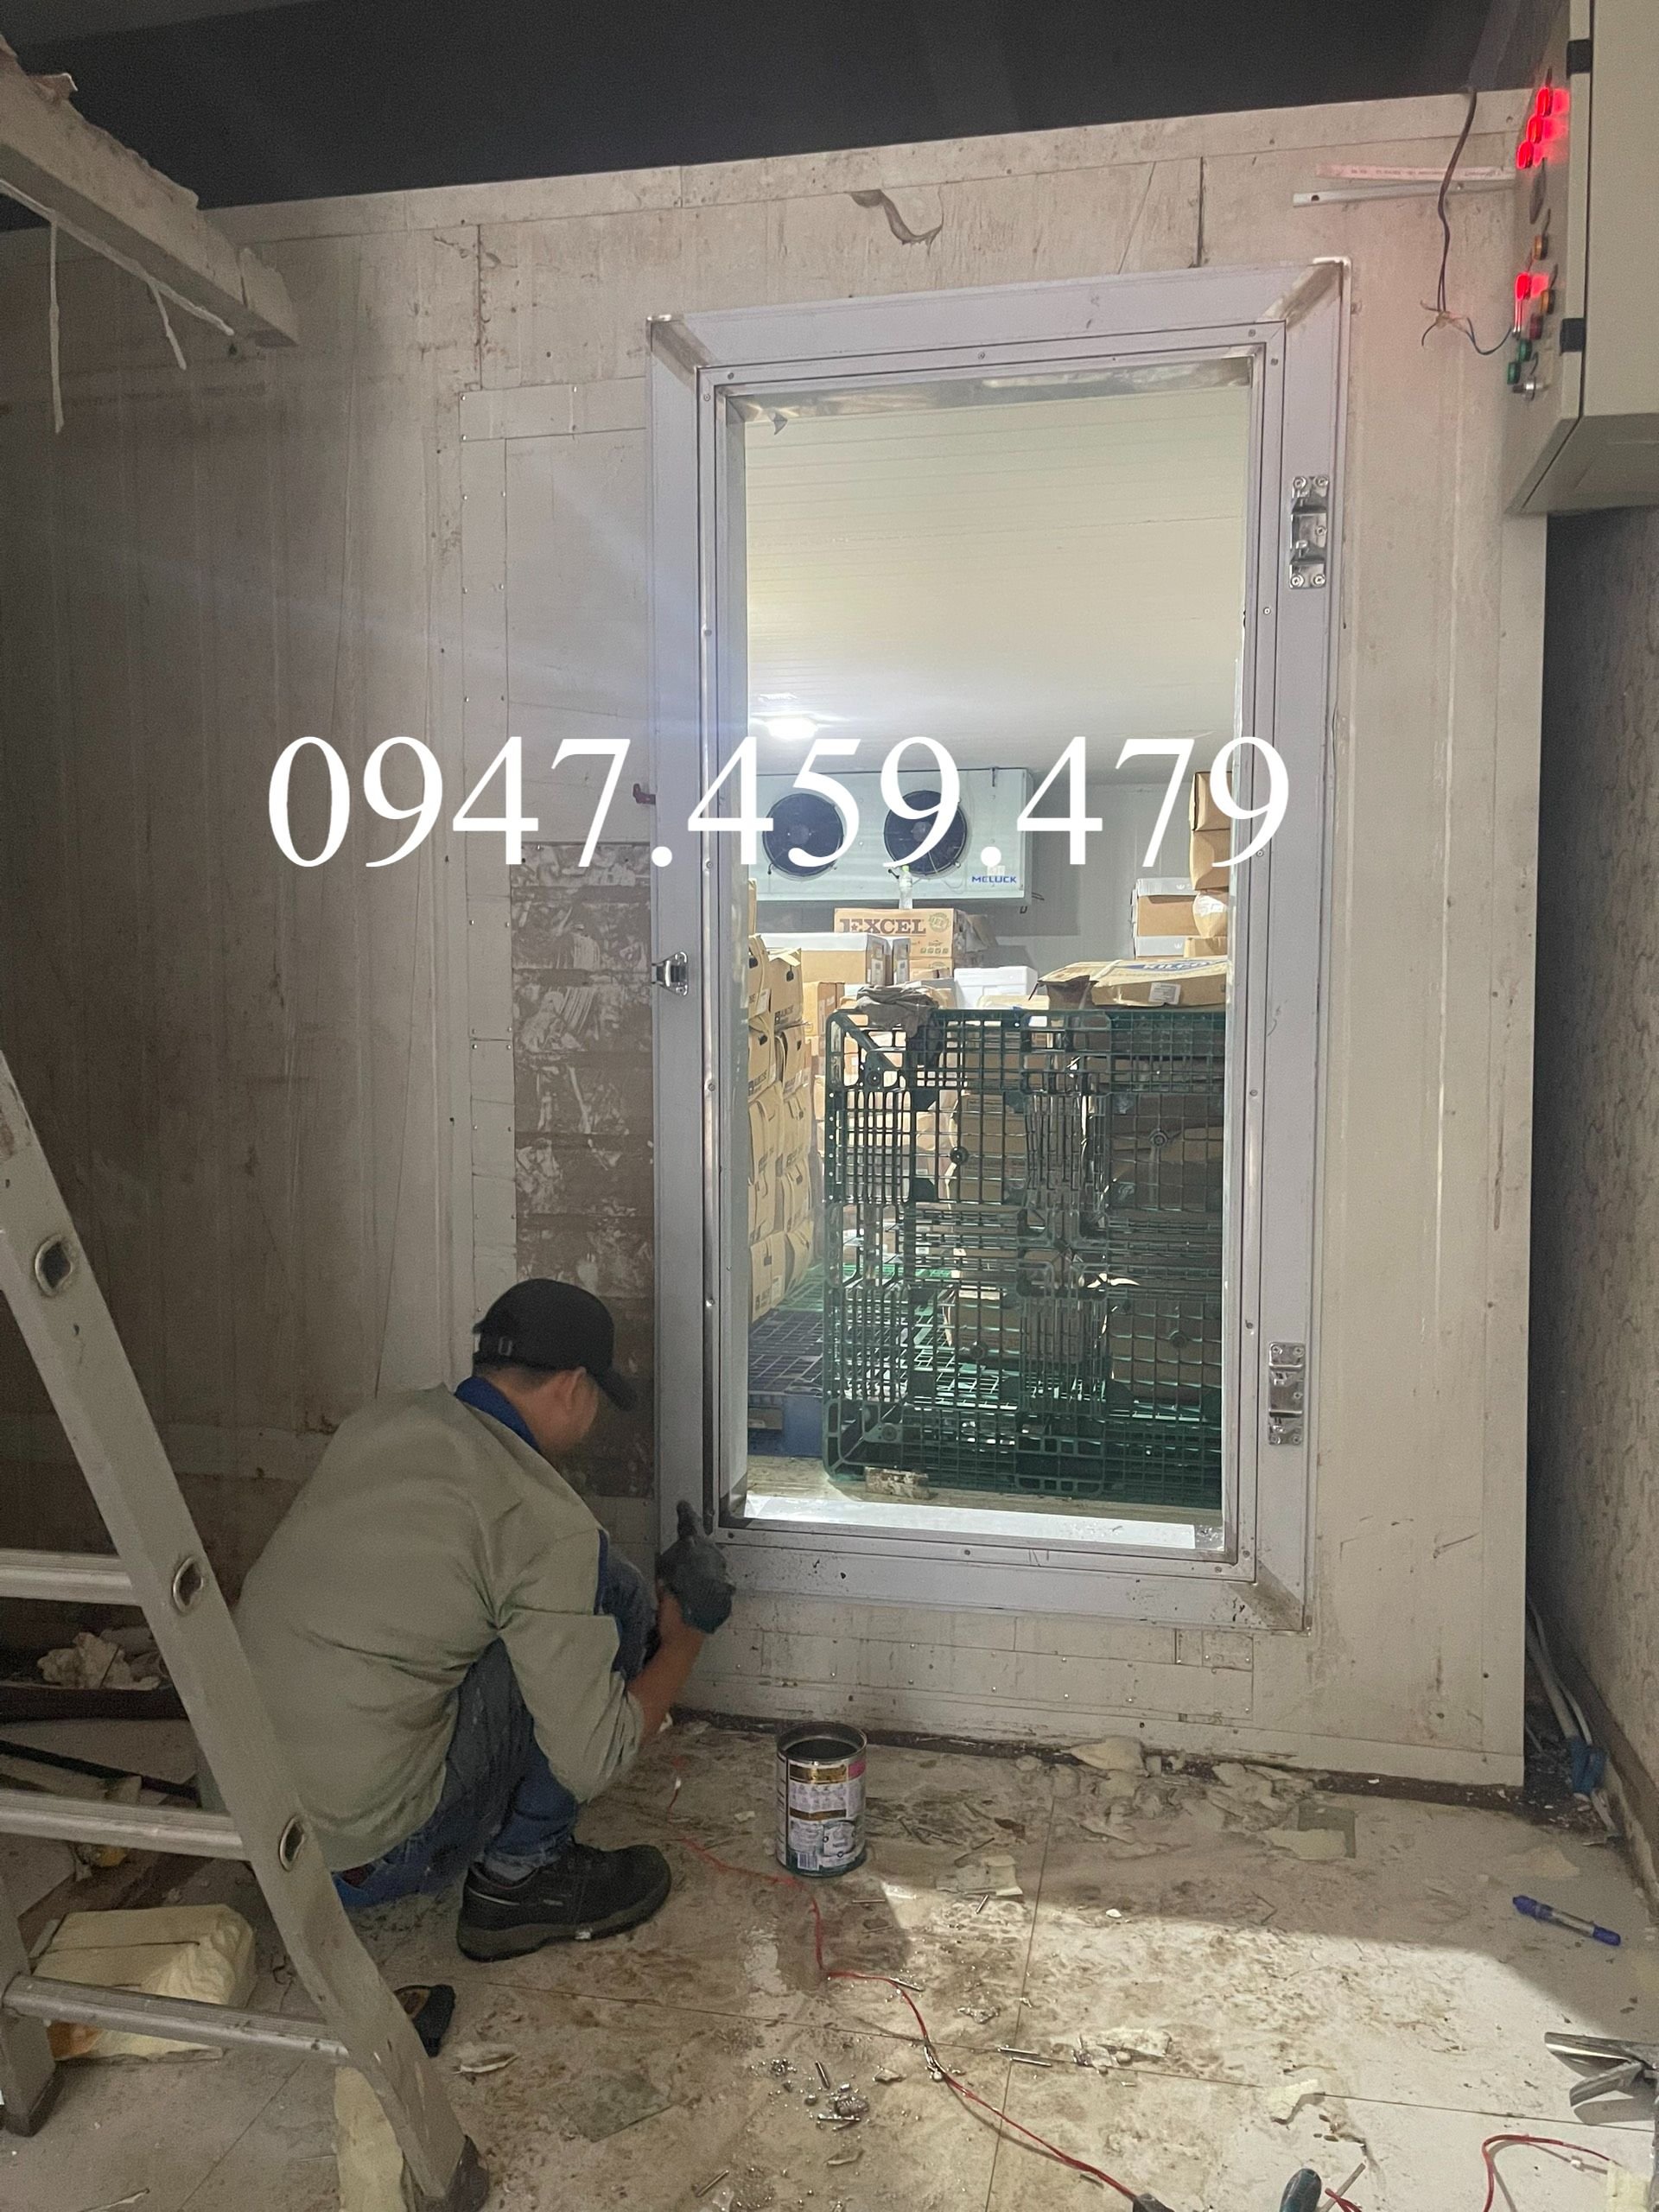 sửa chữa kho lạnh tại quận tân phú 0947459479 thay block kho lạnh tại